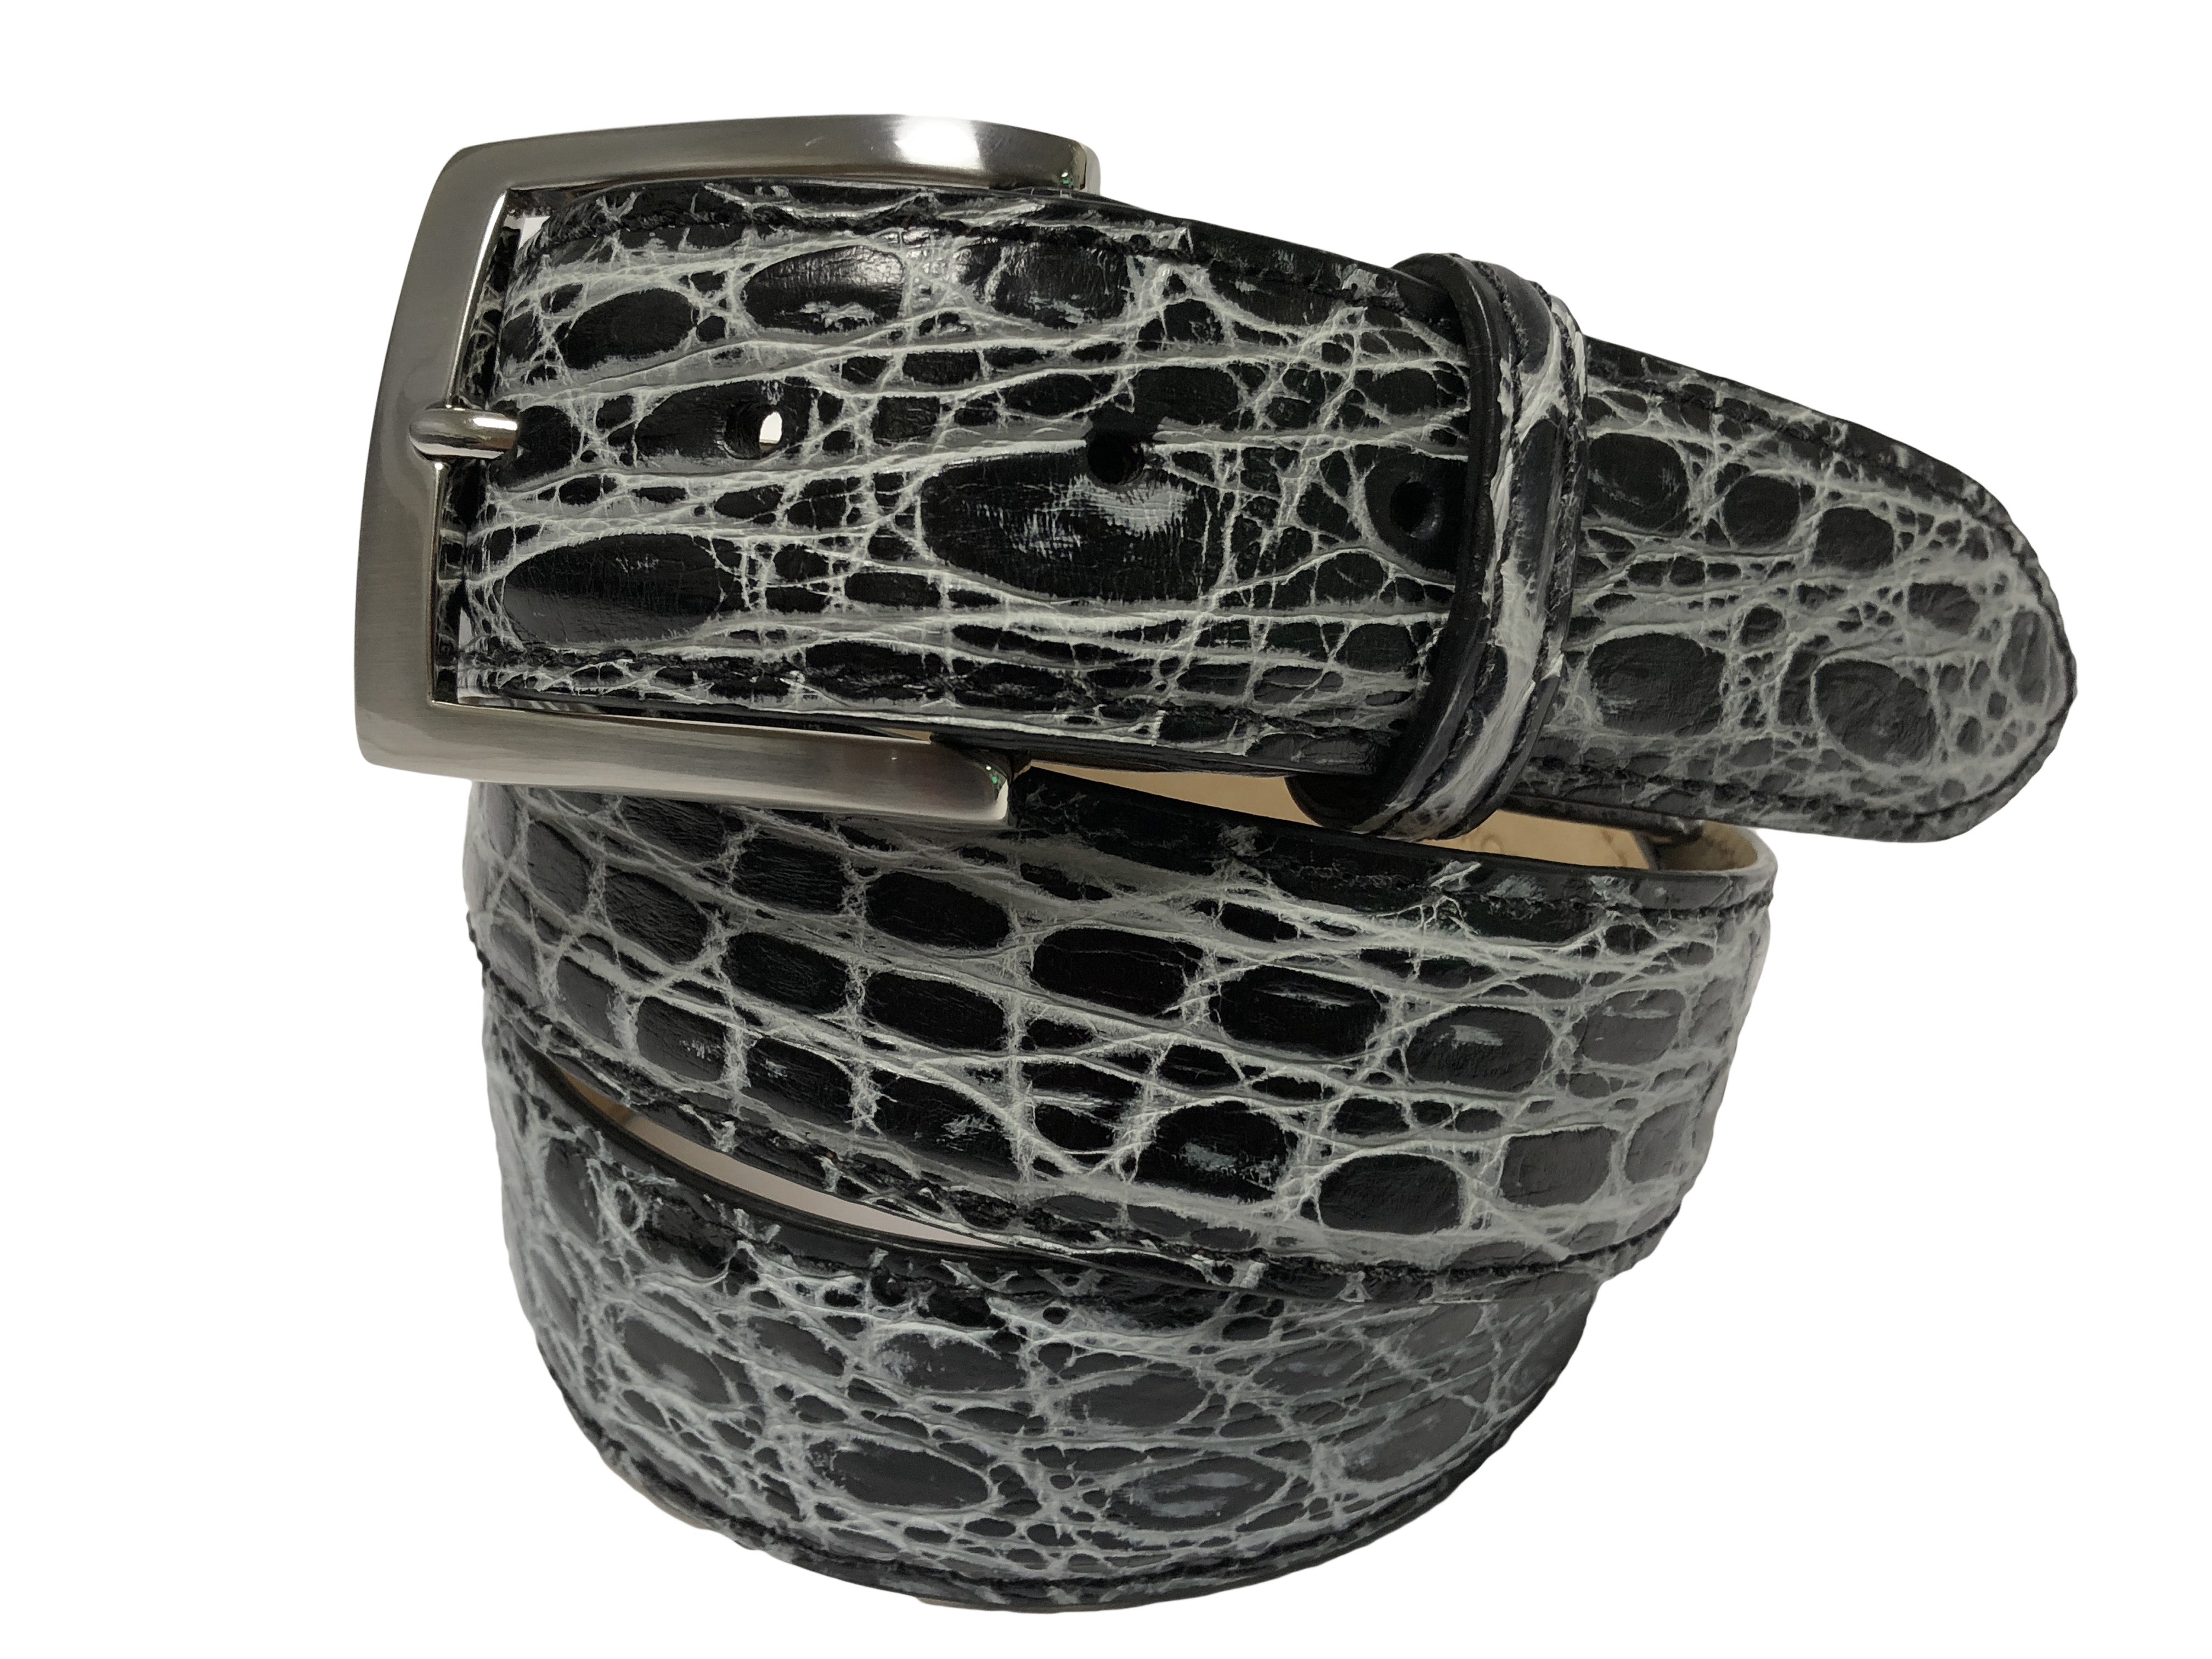 Caiman Skin Handpainted Belt Black/White